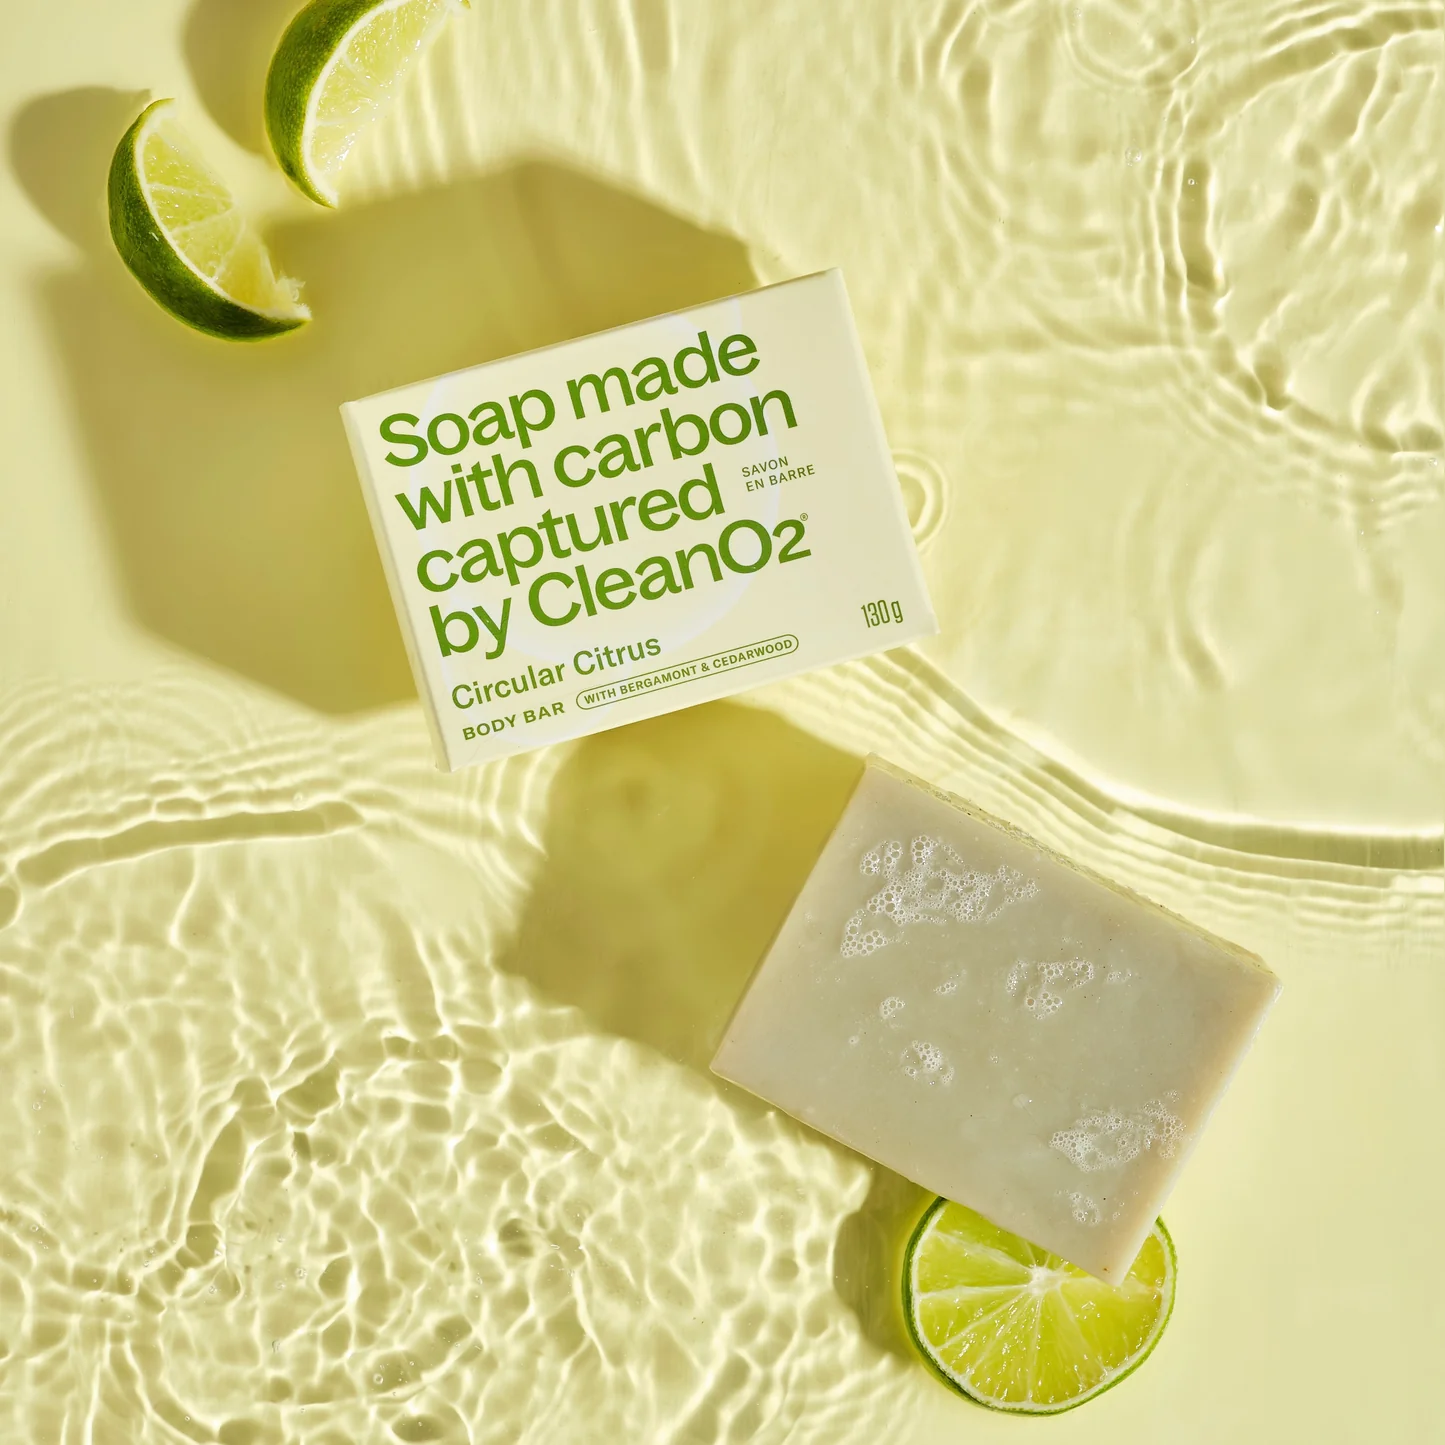 Carbon Capture Soap | Circular Citrus